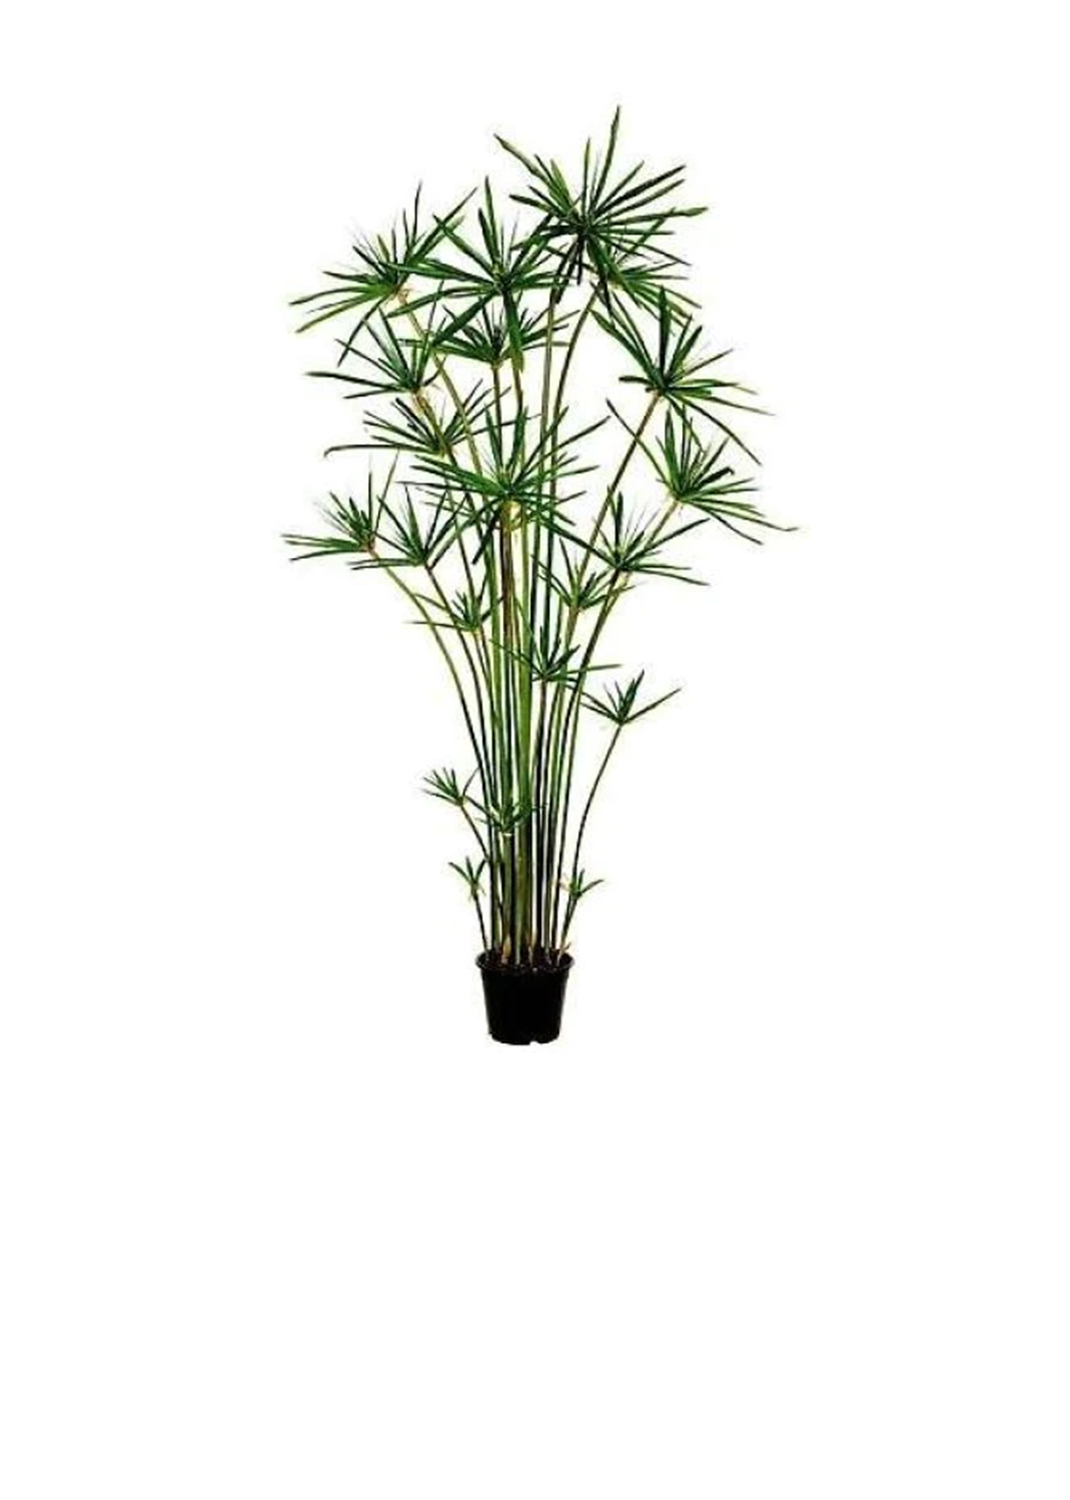 Cyperus Alternifolius, Umbrella Sedge